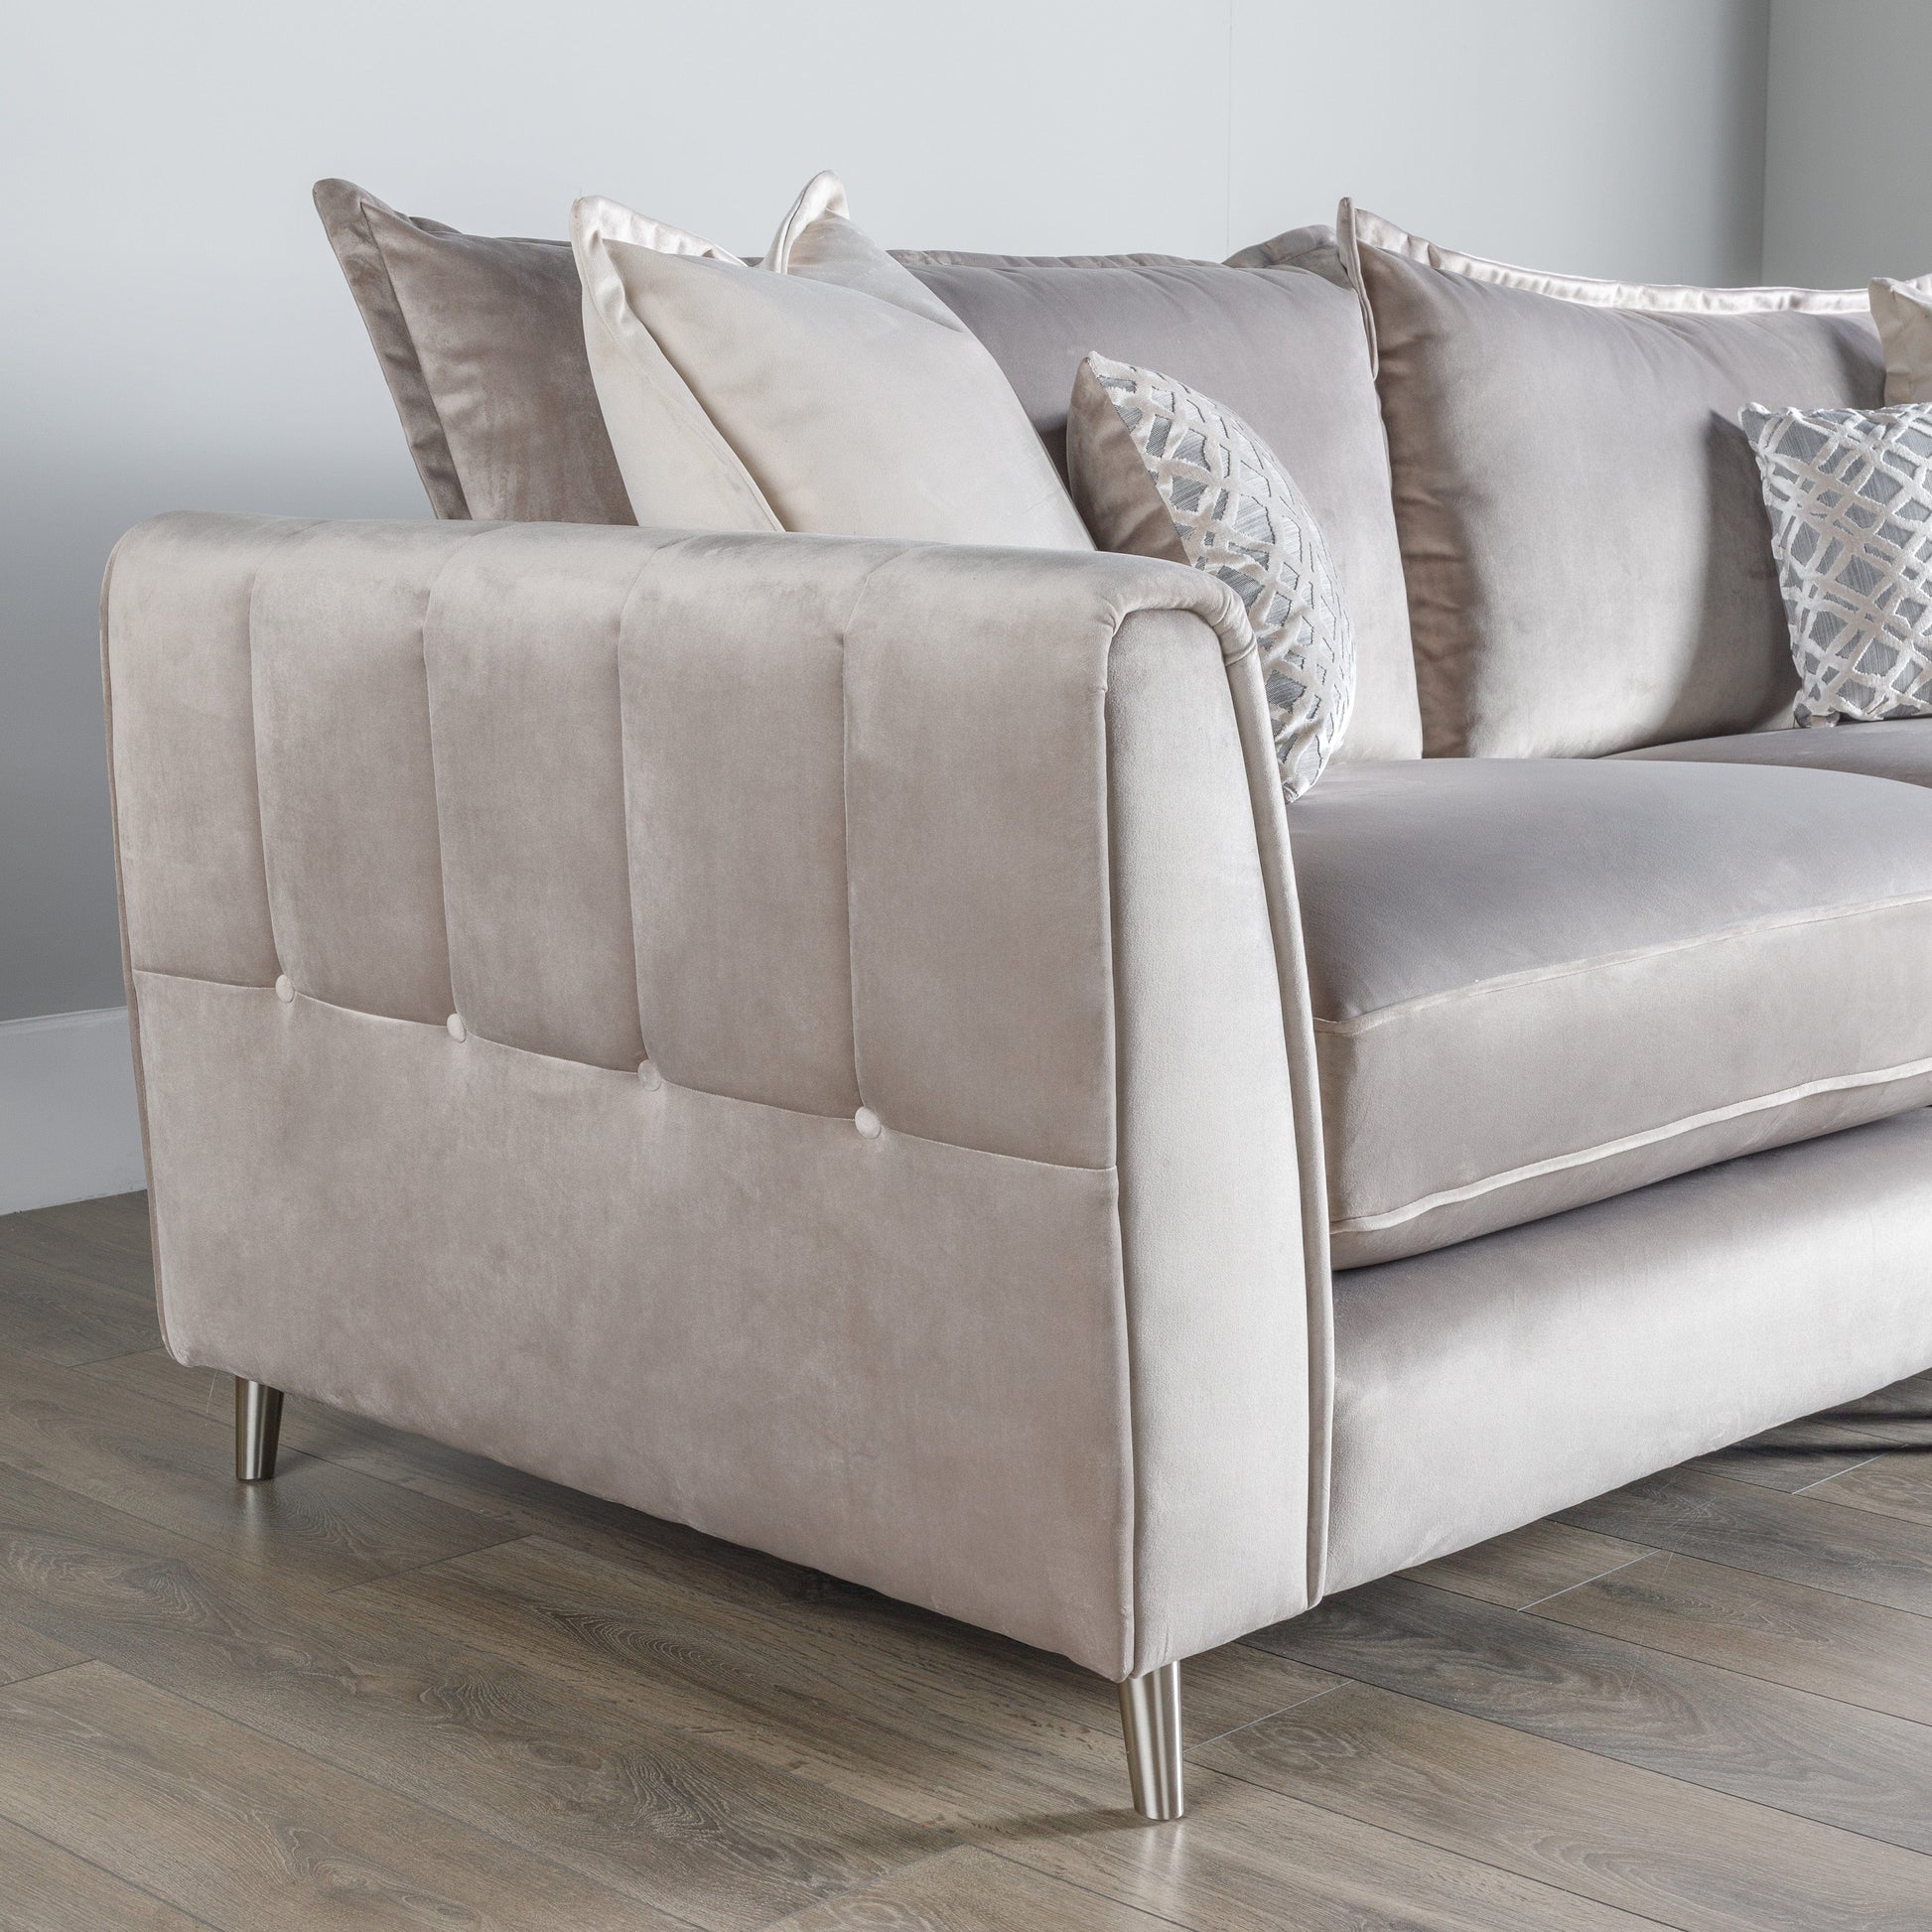 Furniture  -  Nice 4 Seater Sofa  -  60002821